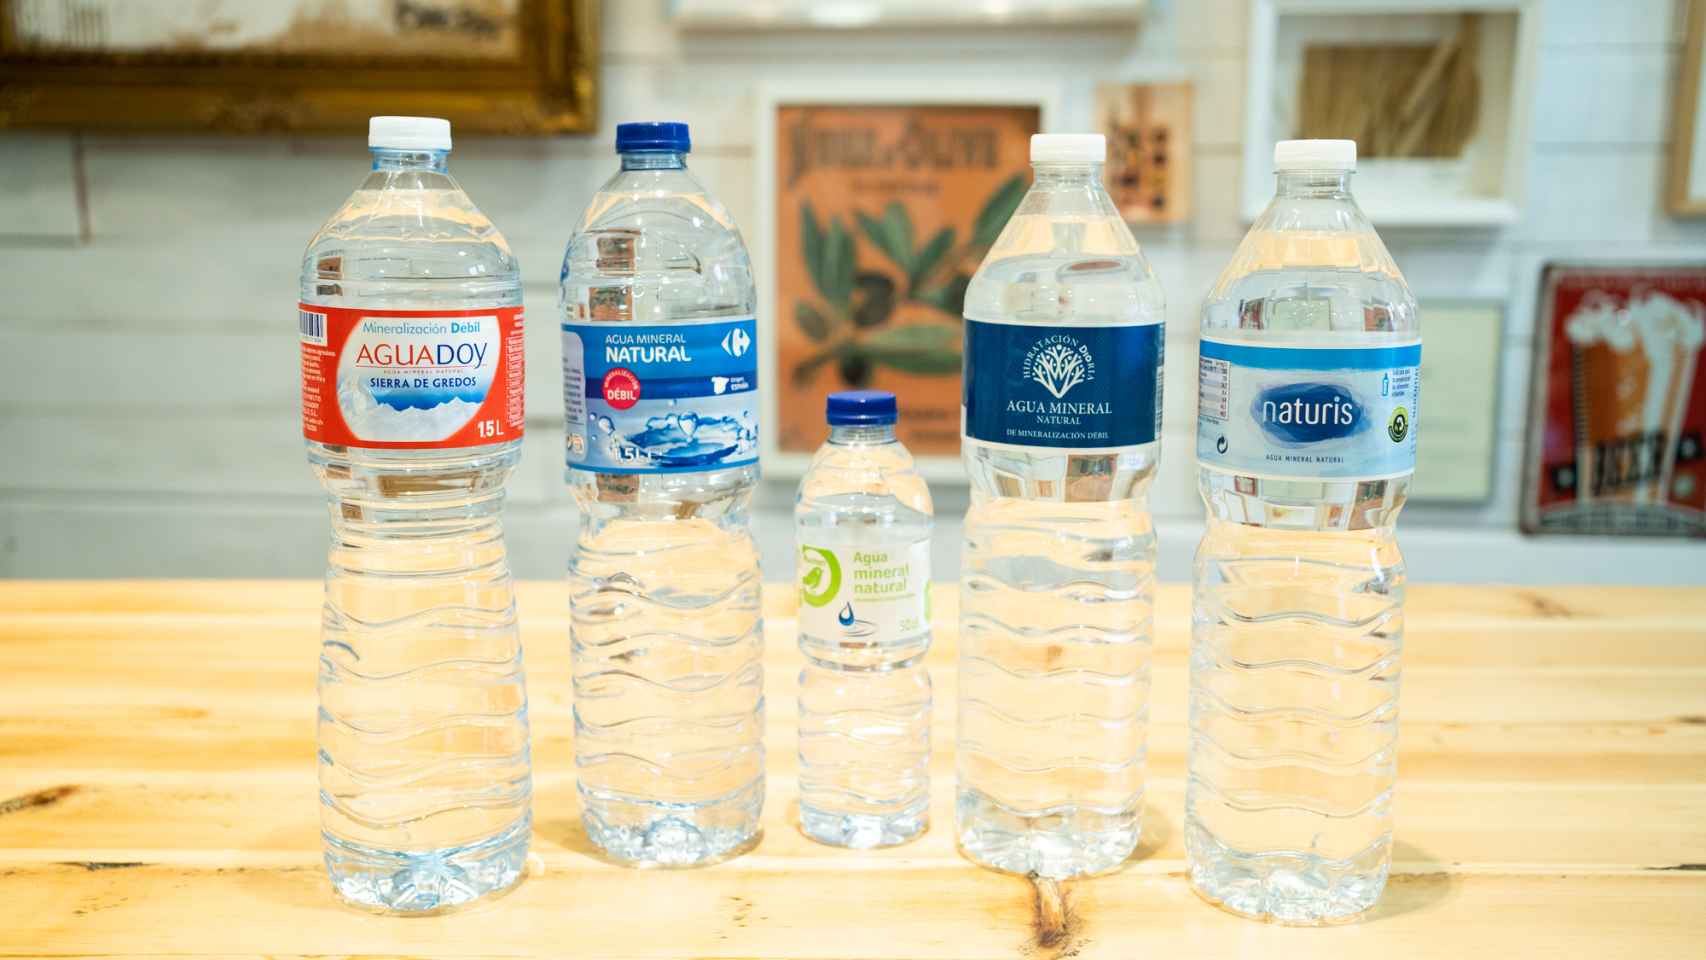 Las cinco aguas minerales naturales de los supermercados testadas en la cata.